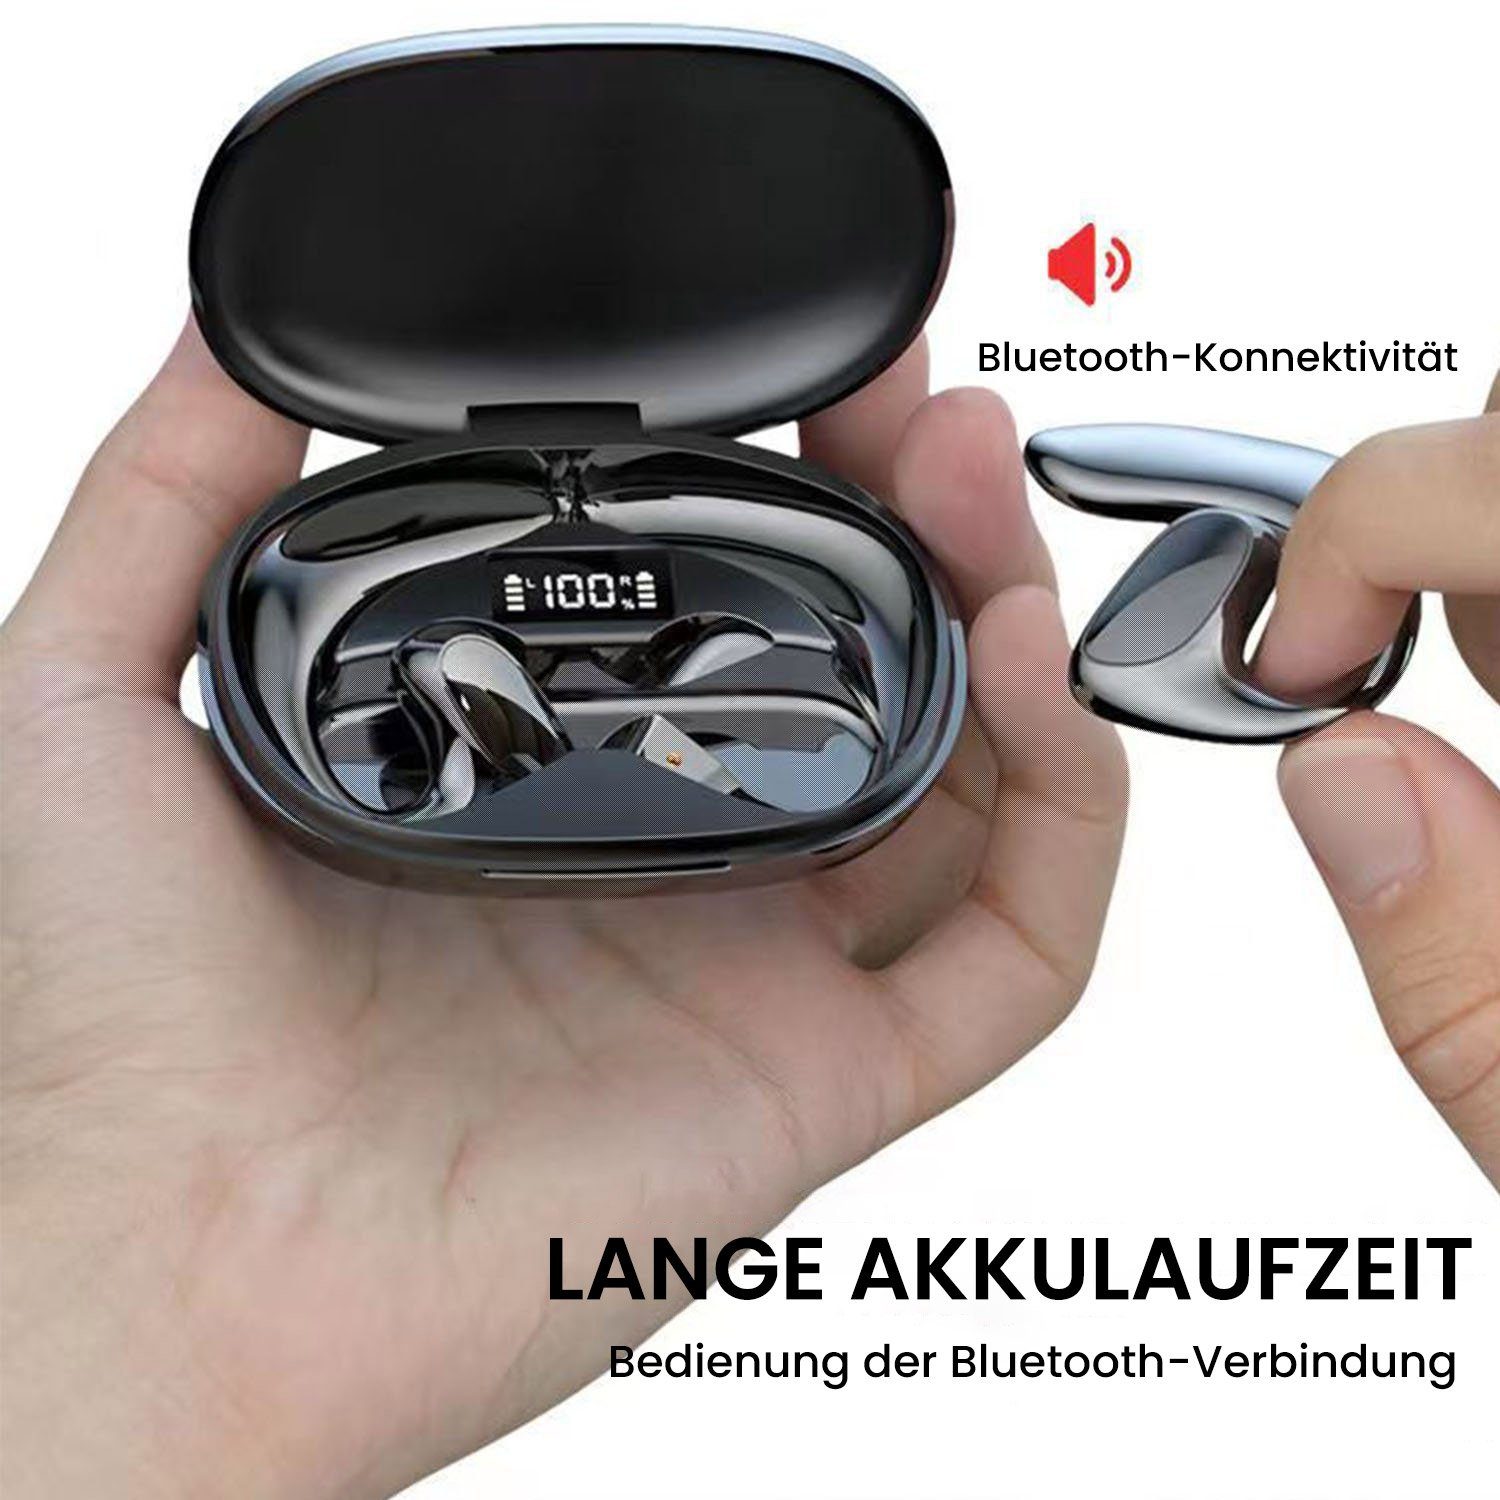 MAGICSHE Knochenleitungs-Headset 5.1 Bluetooth-Kopfhörer Schwarz (Bluetooth)